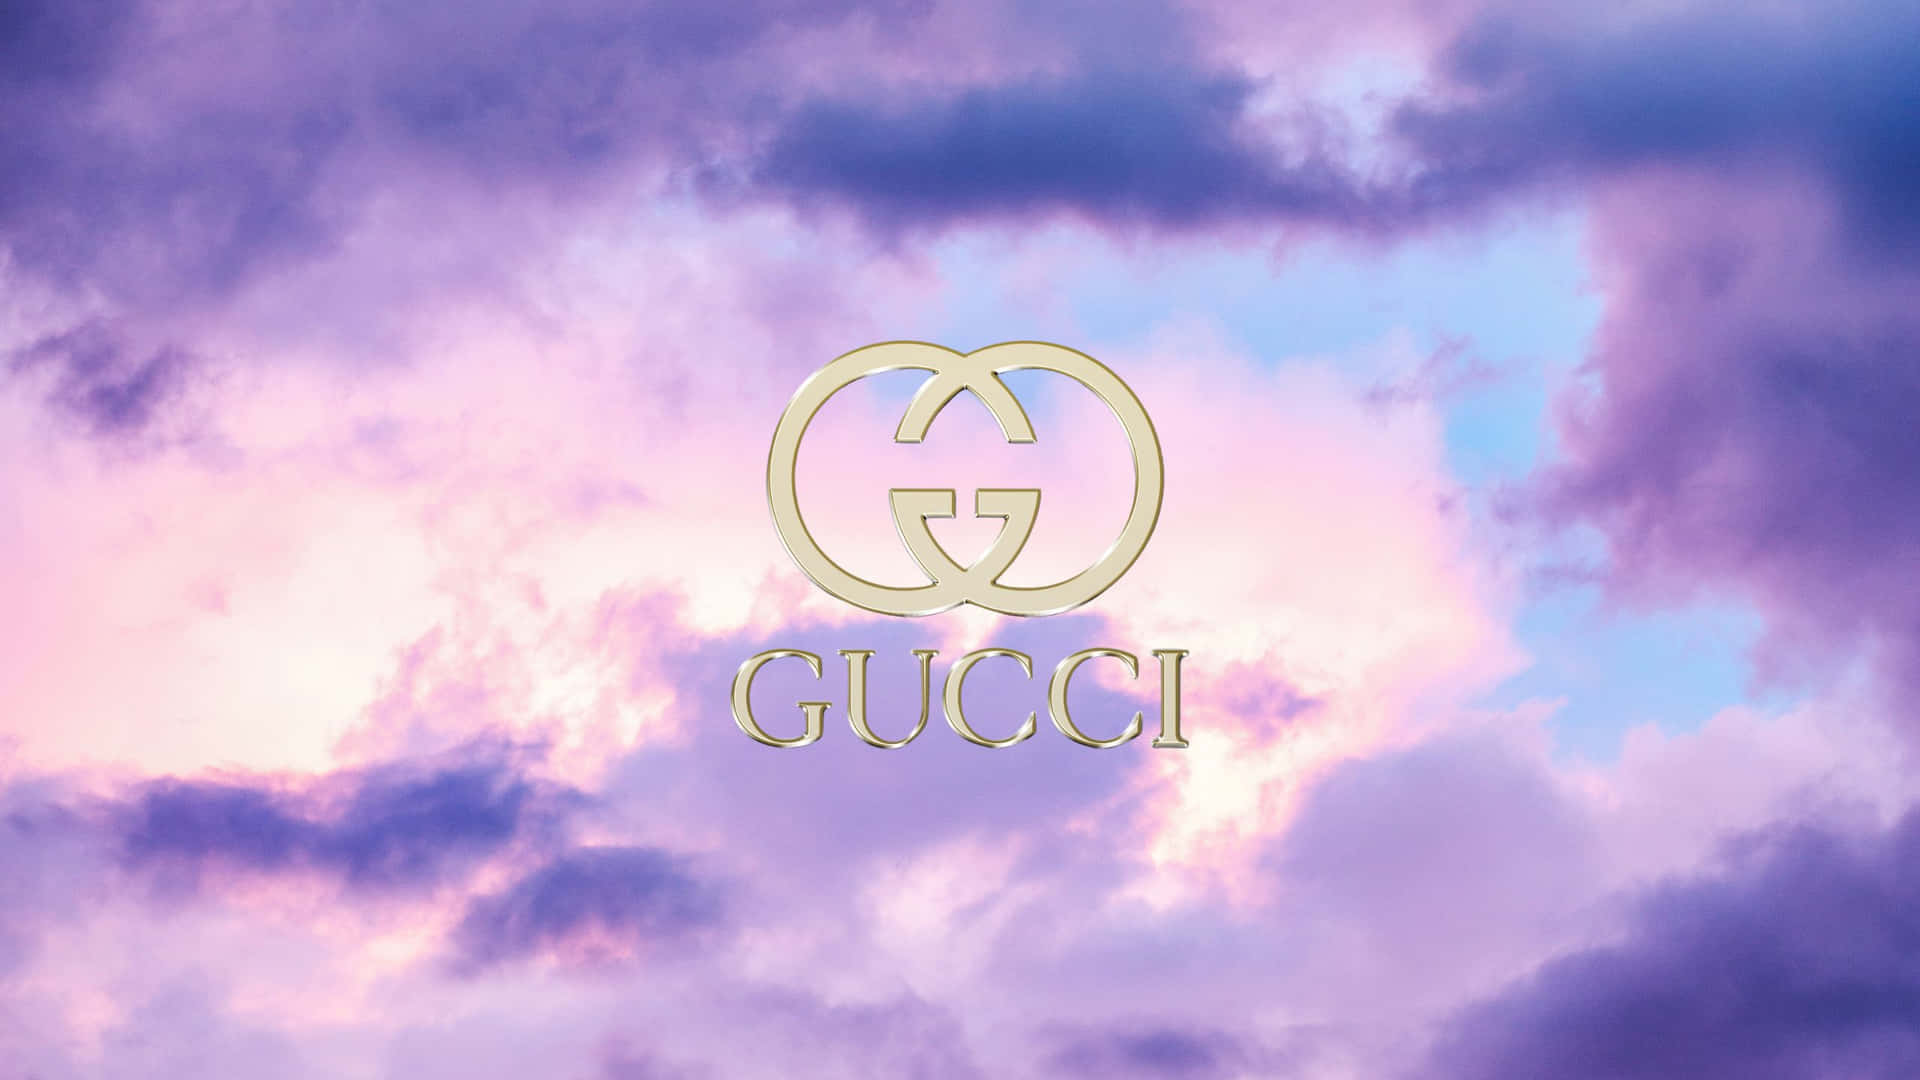 Papelde Parede Roxo Da Gucci Com Arco-íris No Céu. Papel de Parede